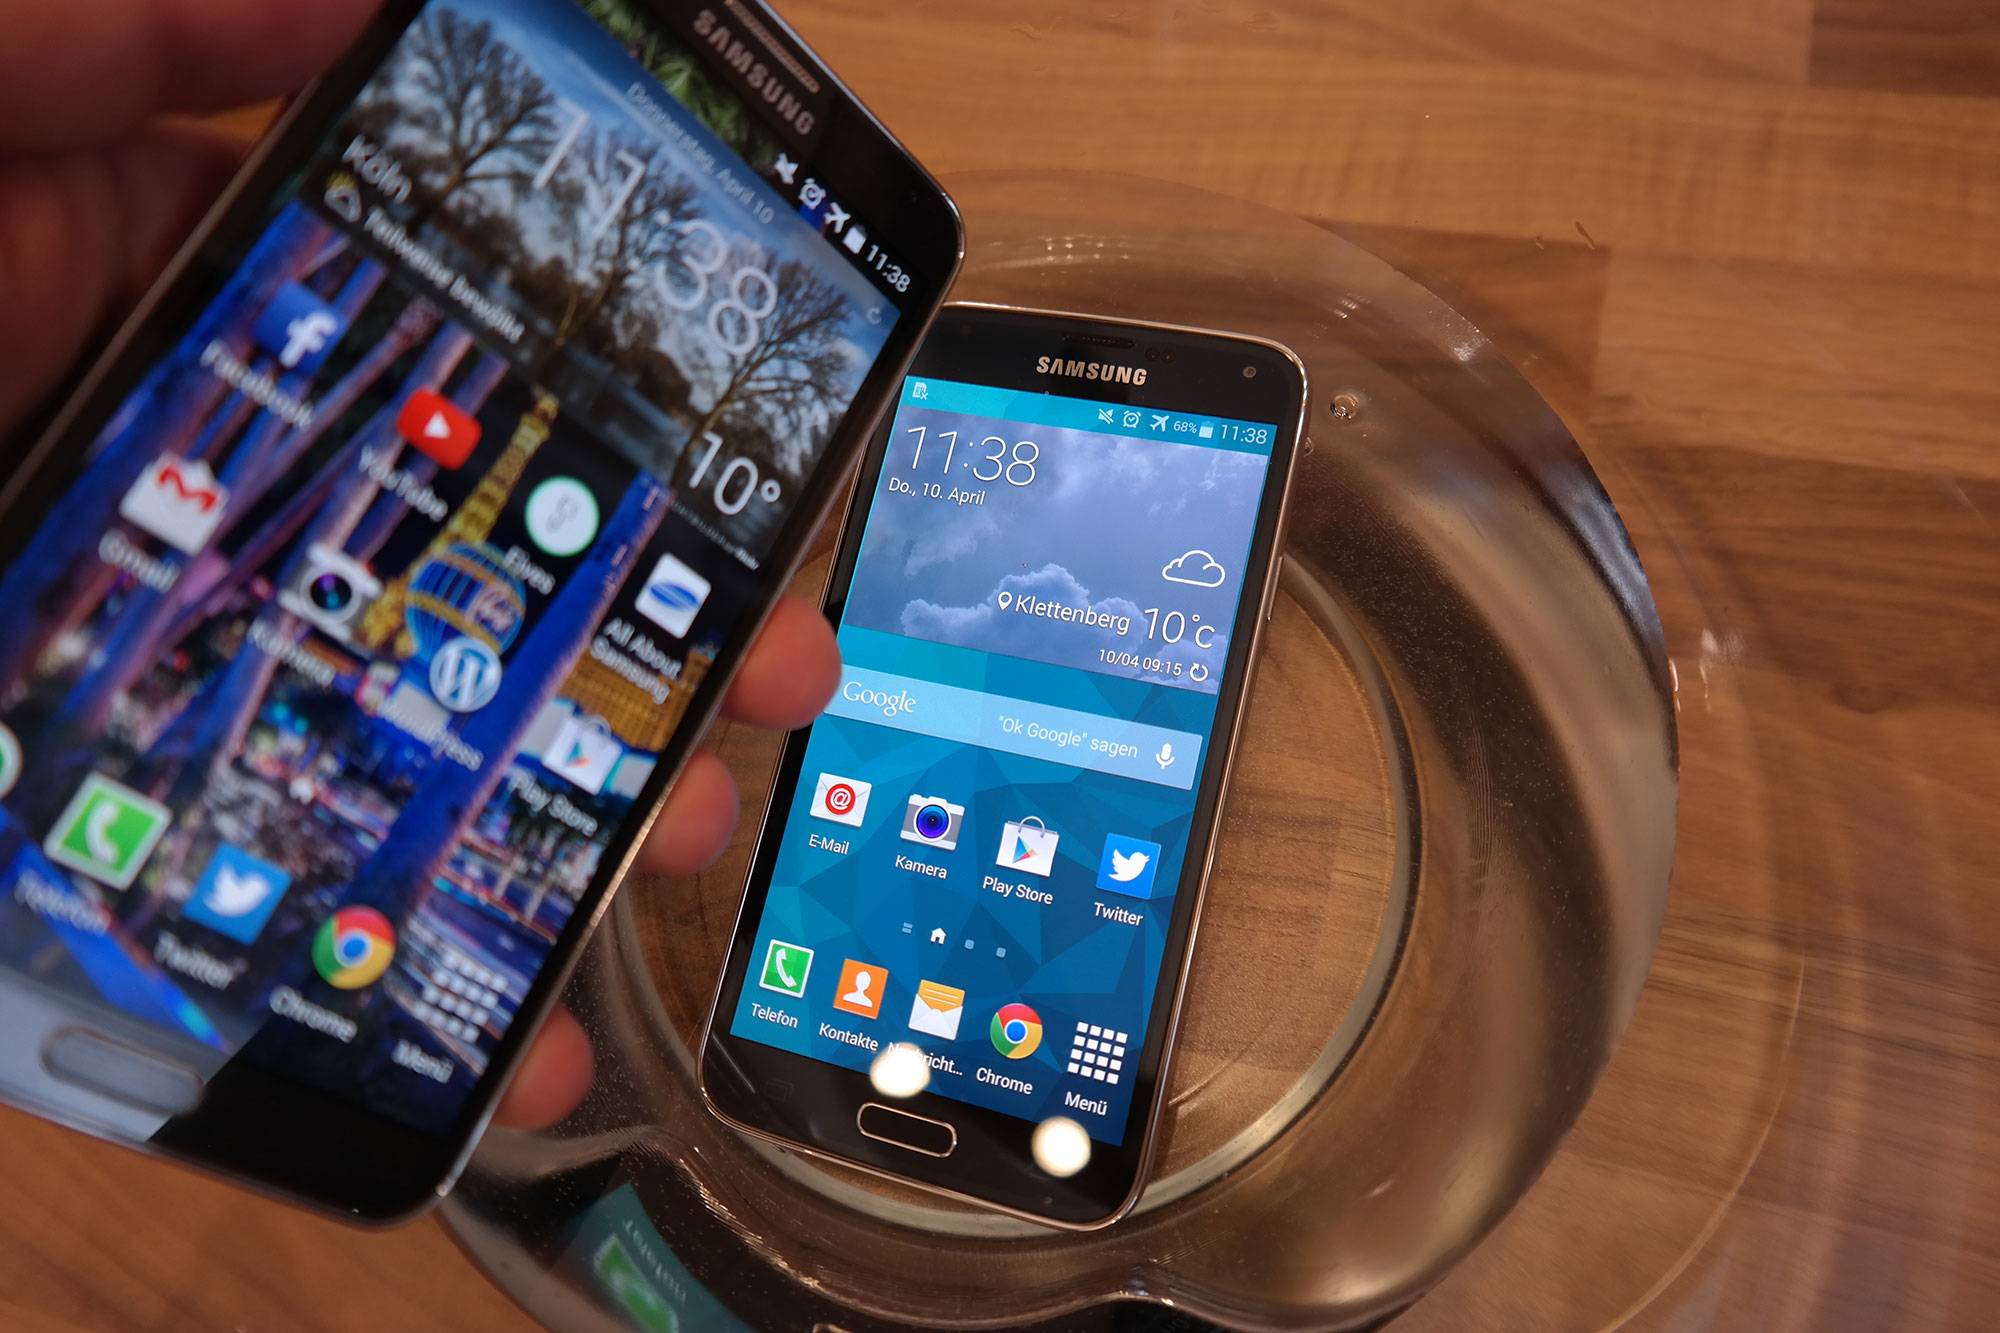 Samsung Galaxy S5 Und Galaxy Note 3 Im Vergleich All About Samsung